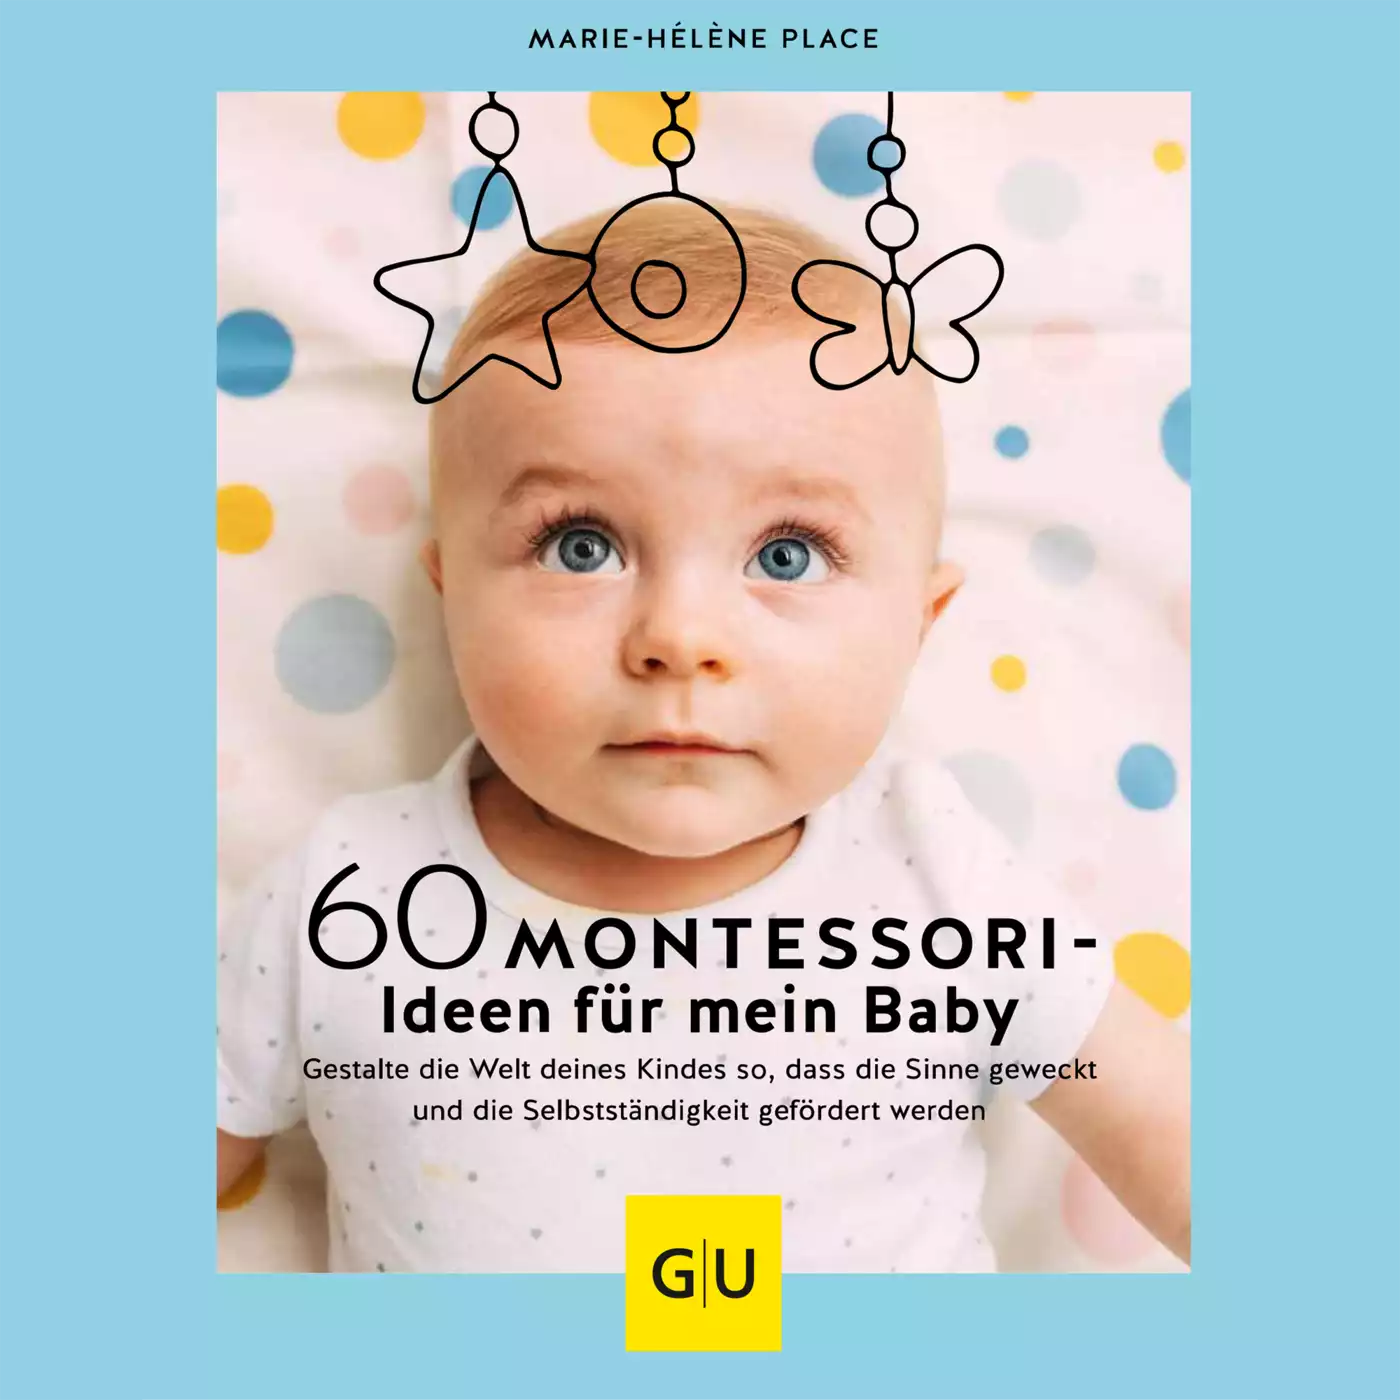 60 Montessori-Ideen für mein Baby GU 2000582197608 1